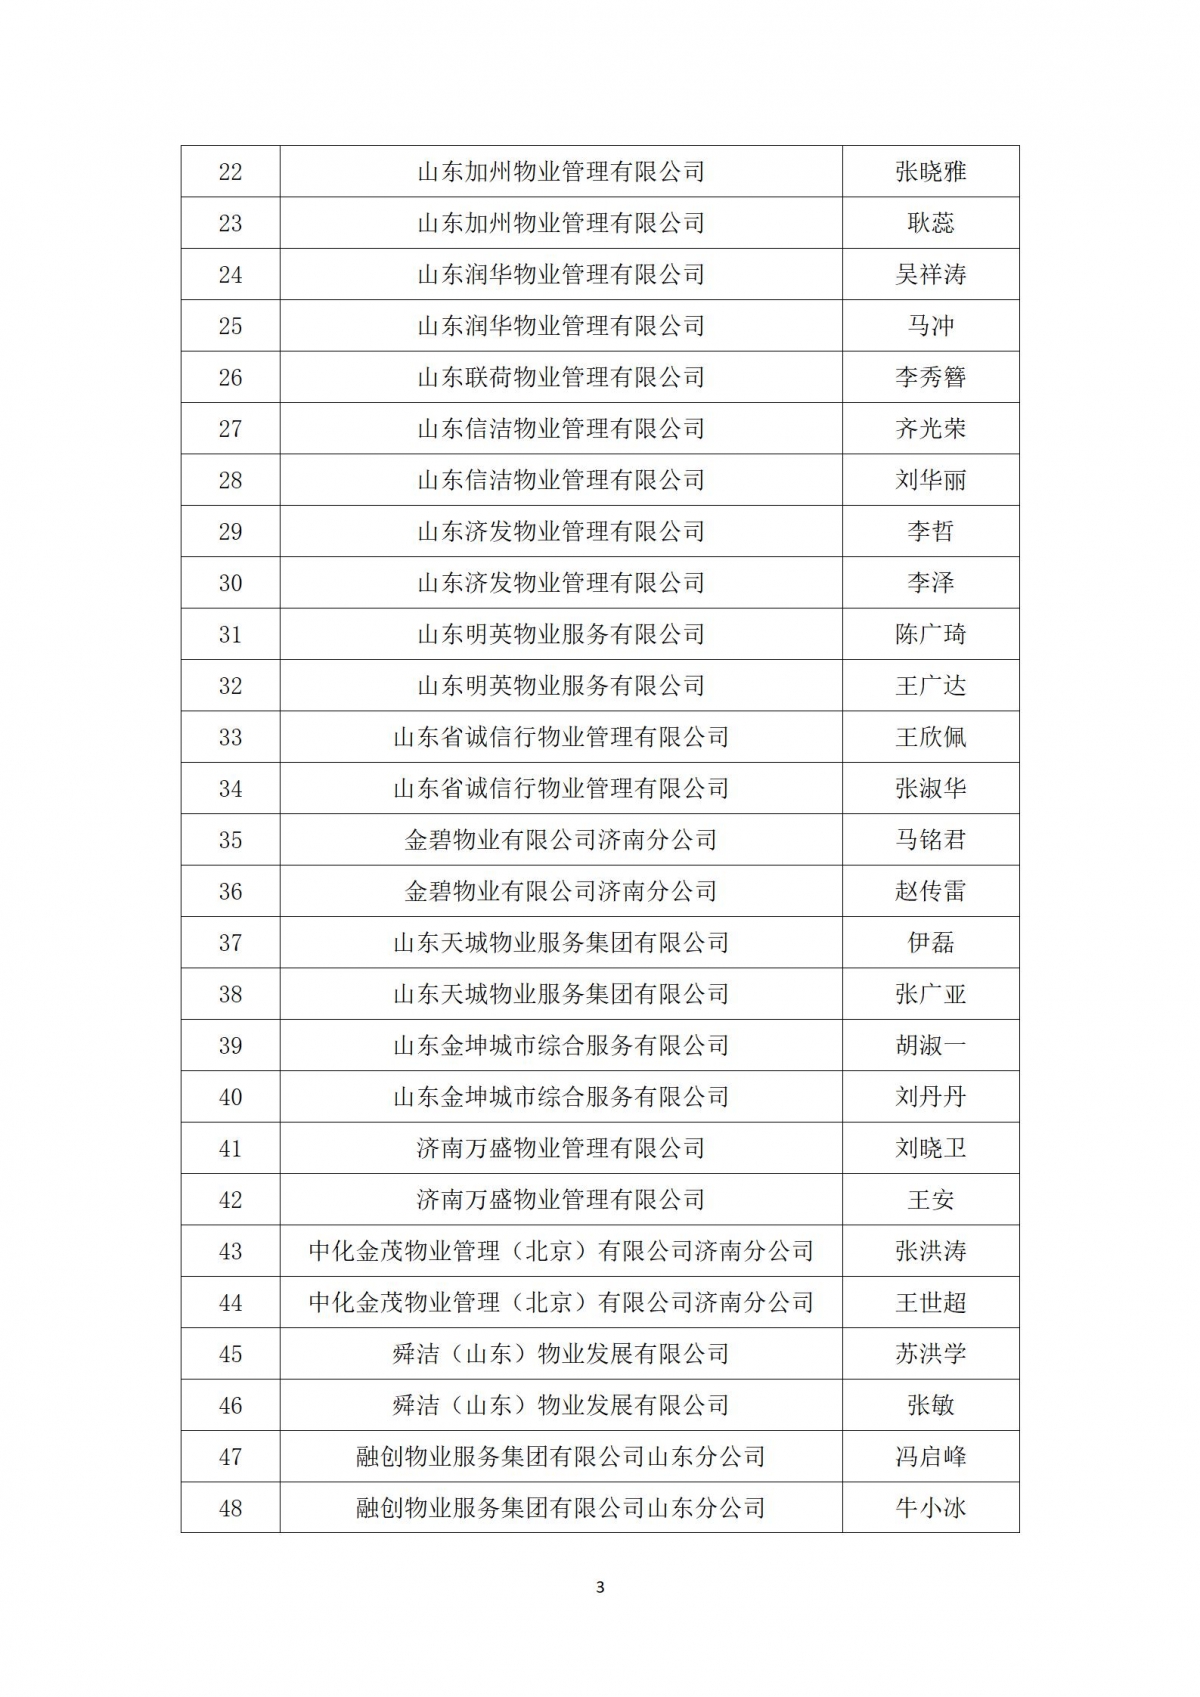 关于“天城杯”第七届济南市物业服务行业职业技能竞赛选手名单的公示_03